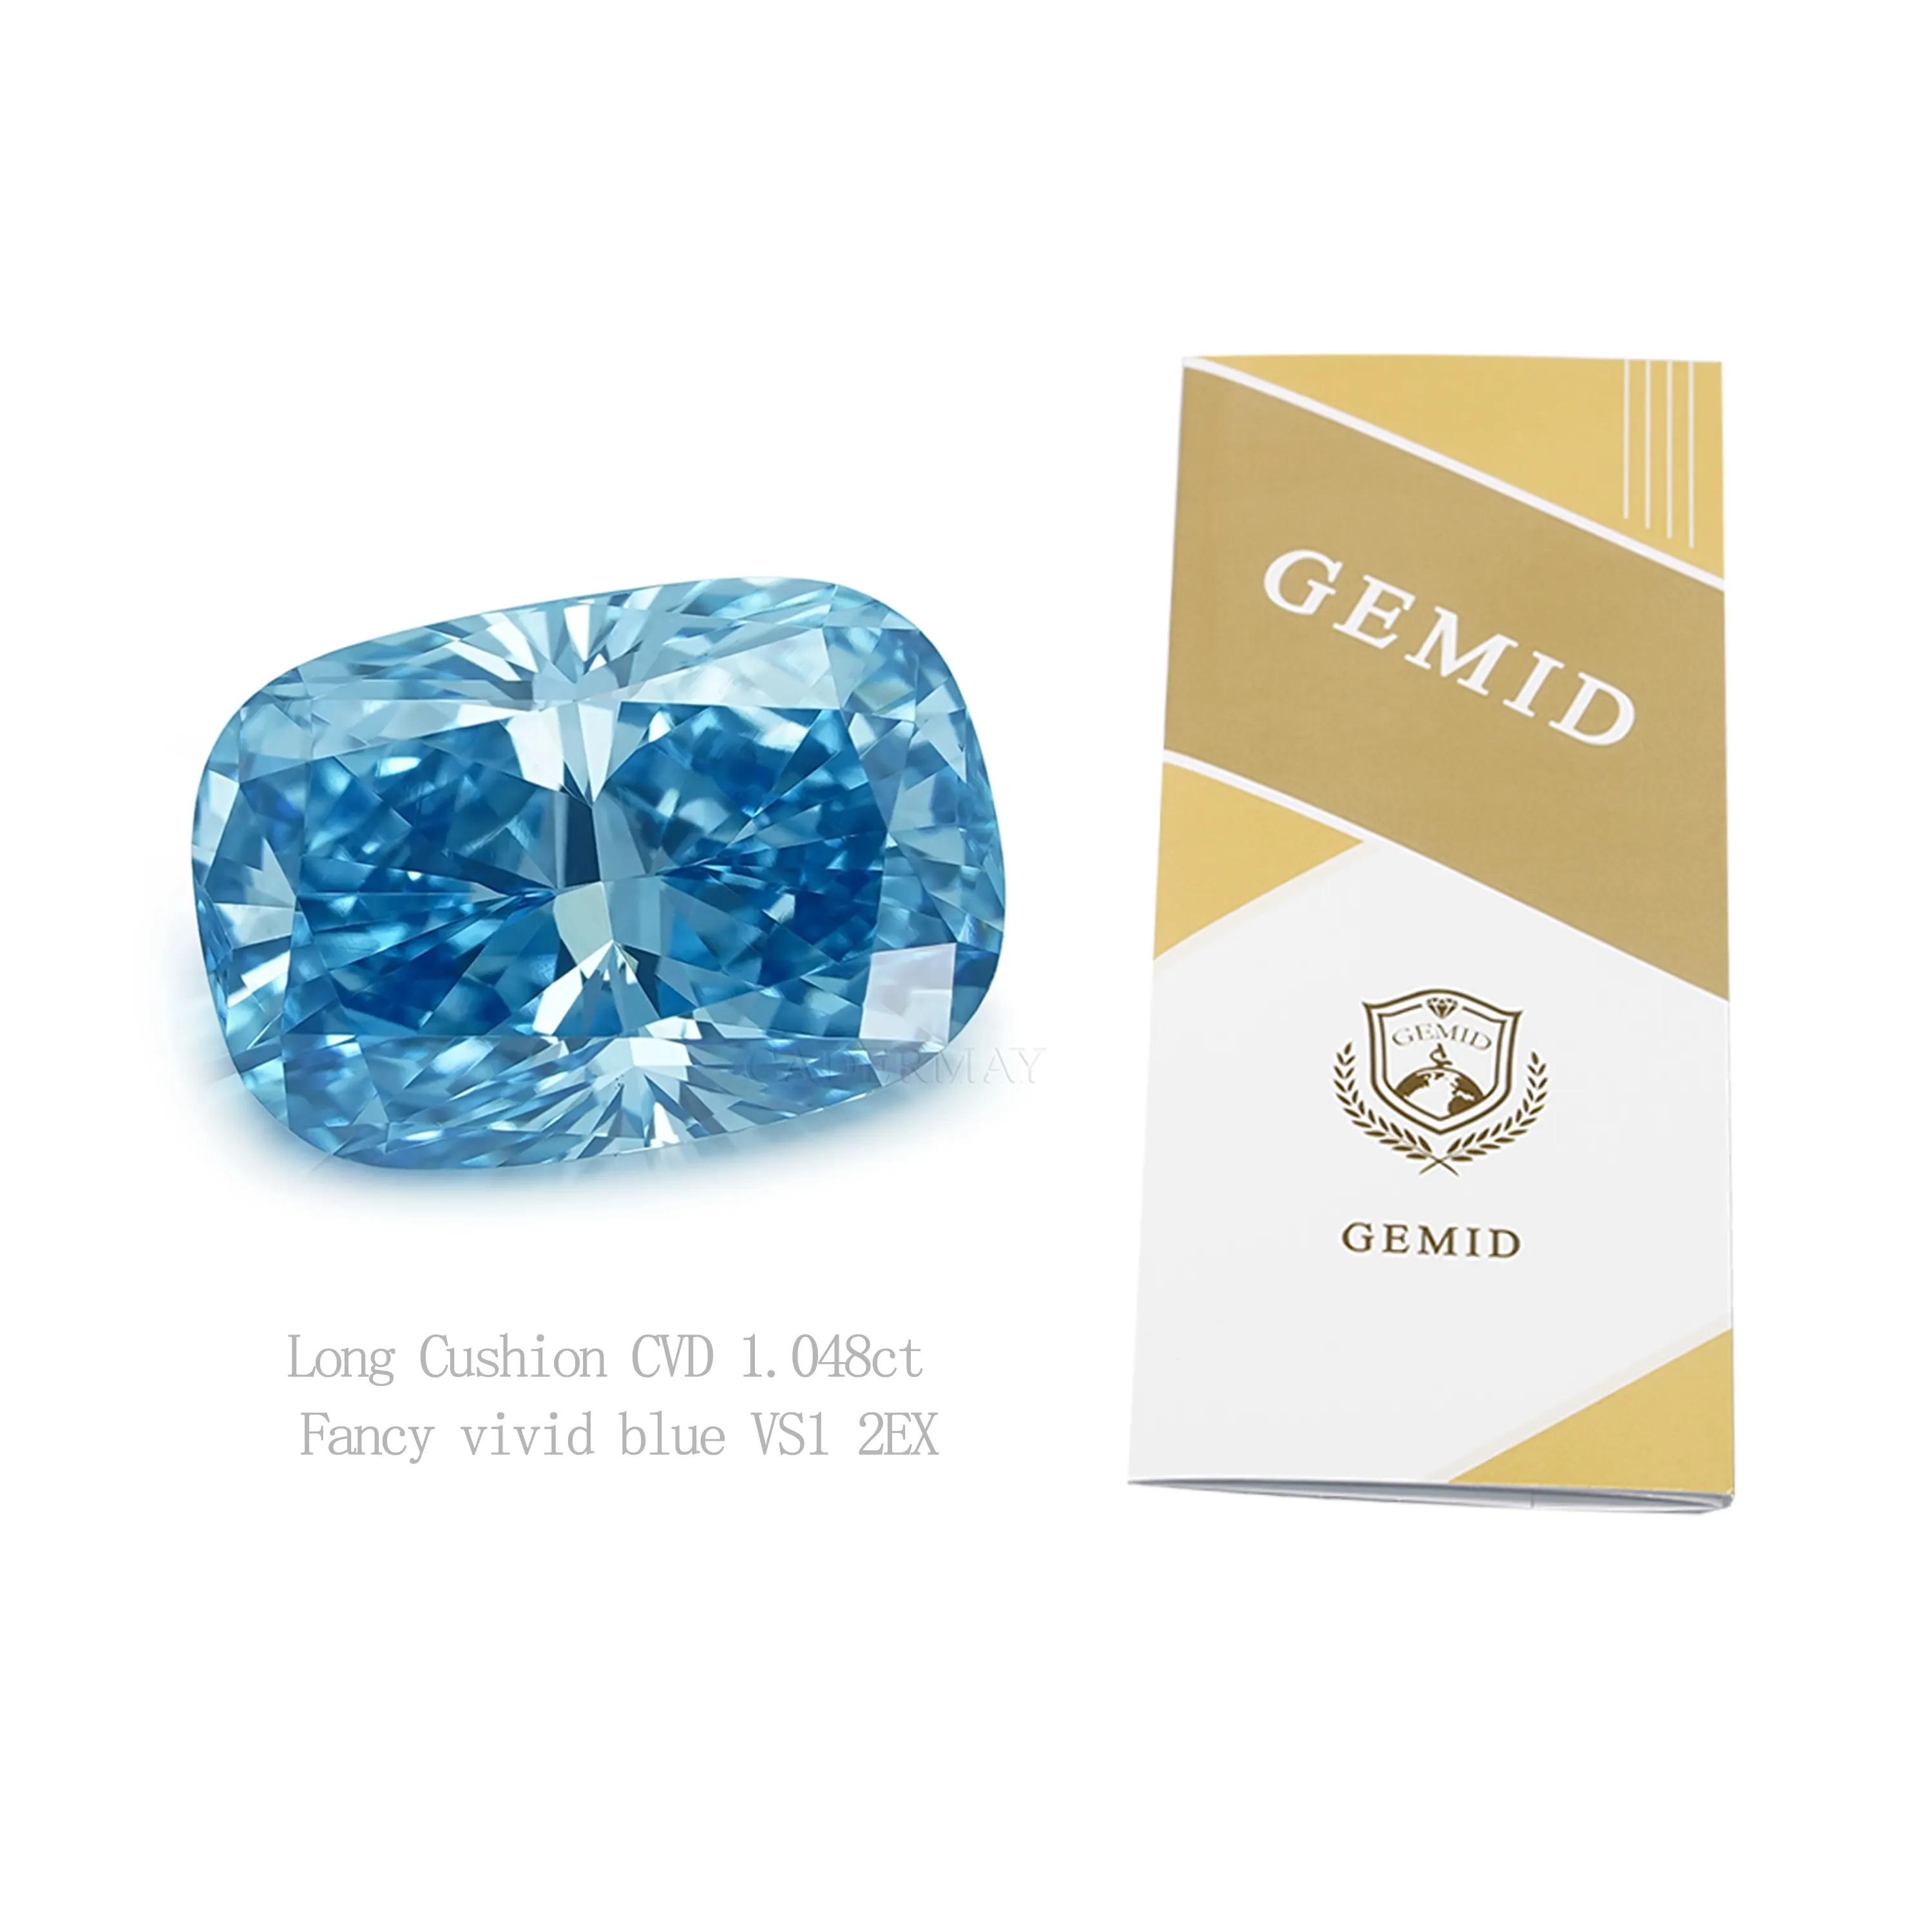 HPHT CVD laboratorium biru cerah, mewah buatan berlian 1ct bantal panjang longgar berlian sintetis dengan sertifikat GEMID berlian berwarna-warni